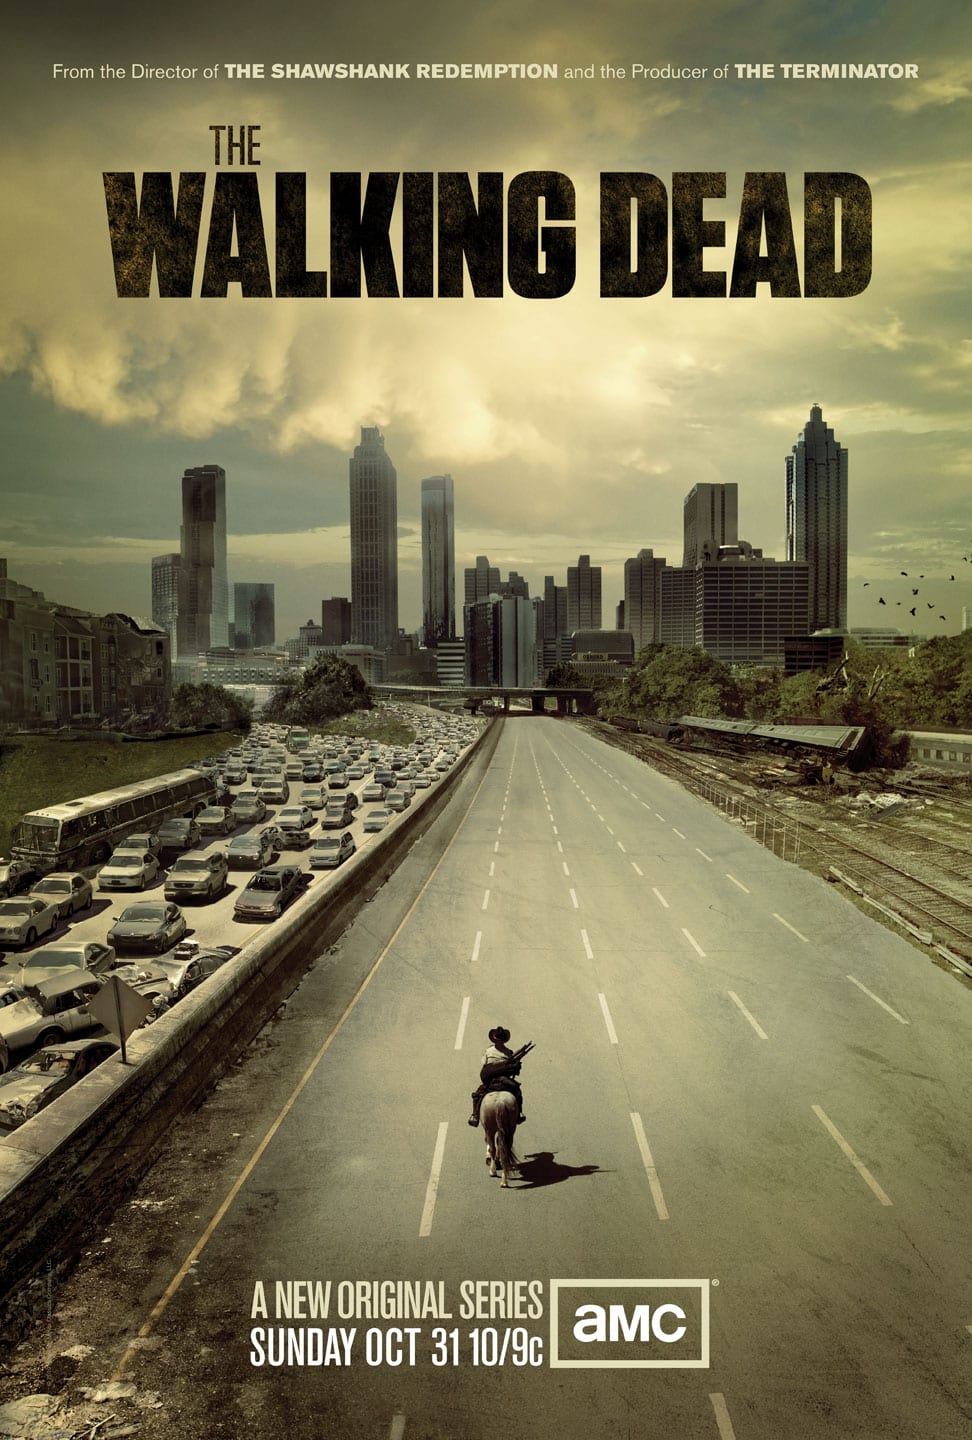 Walking dead season 1 poster promo